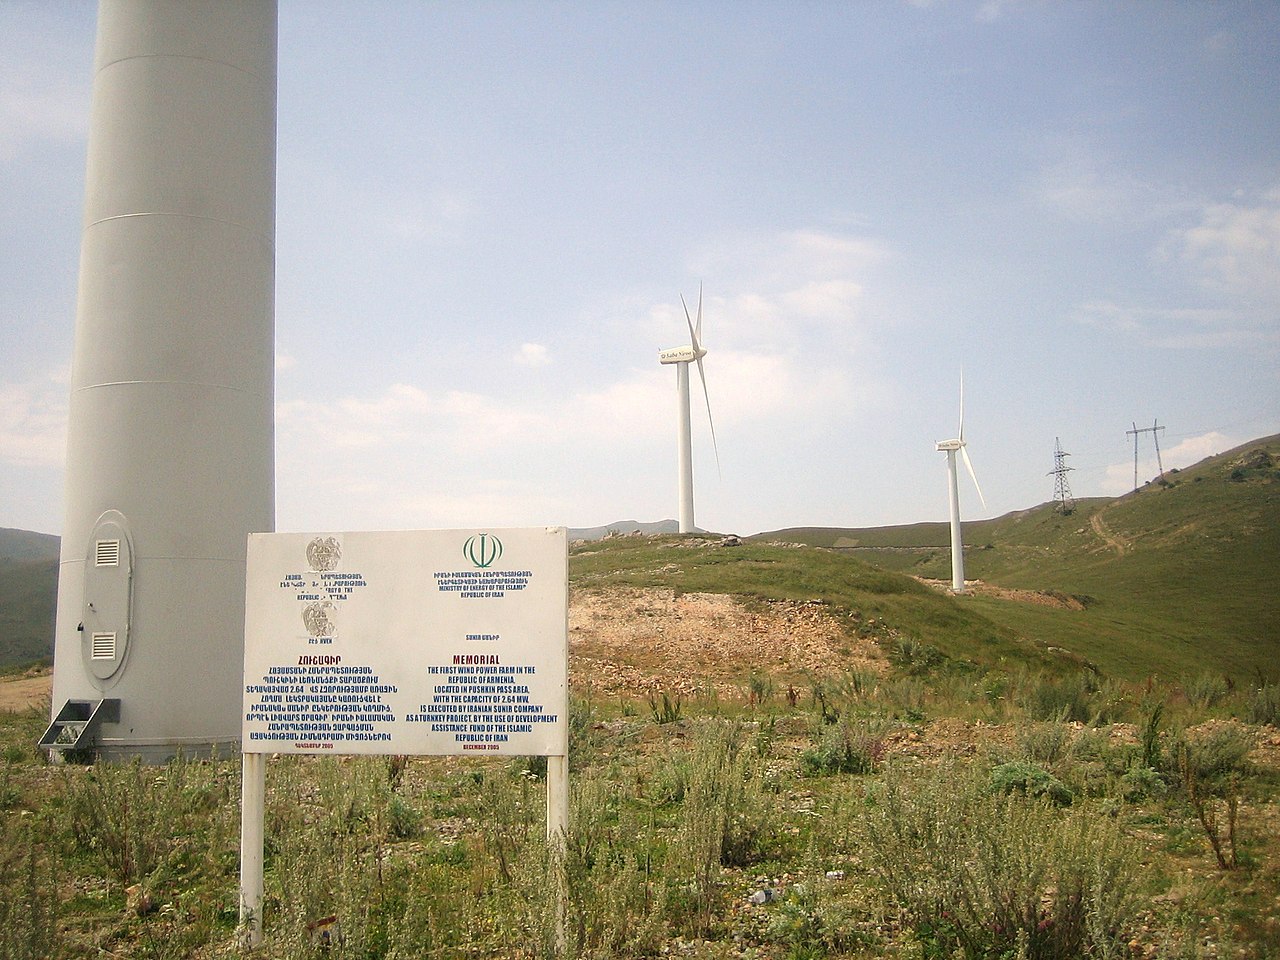 Lori-1 Armenia 2.6MW Wind Farm